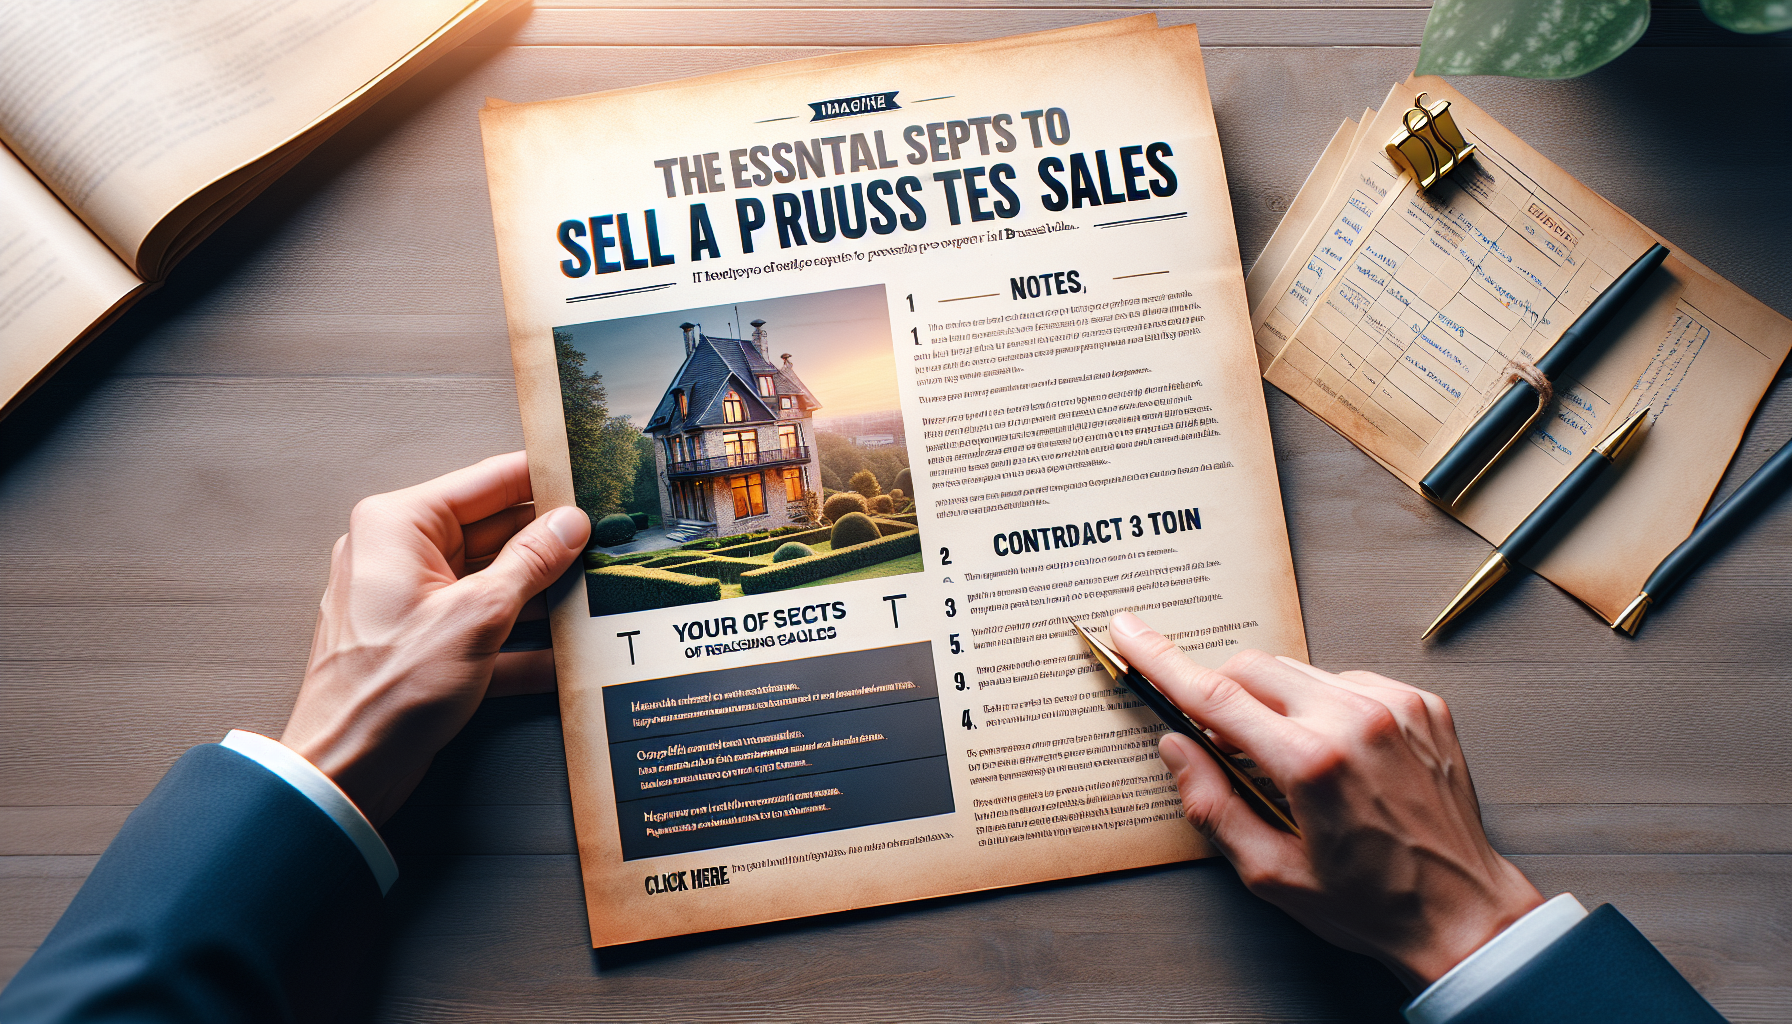 découvrez les étapes essentielles à connaître pour vendre une propriété à bruxelles. conseils pratiques et guides pour réussir votre vente immobilière.